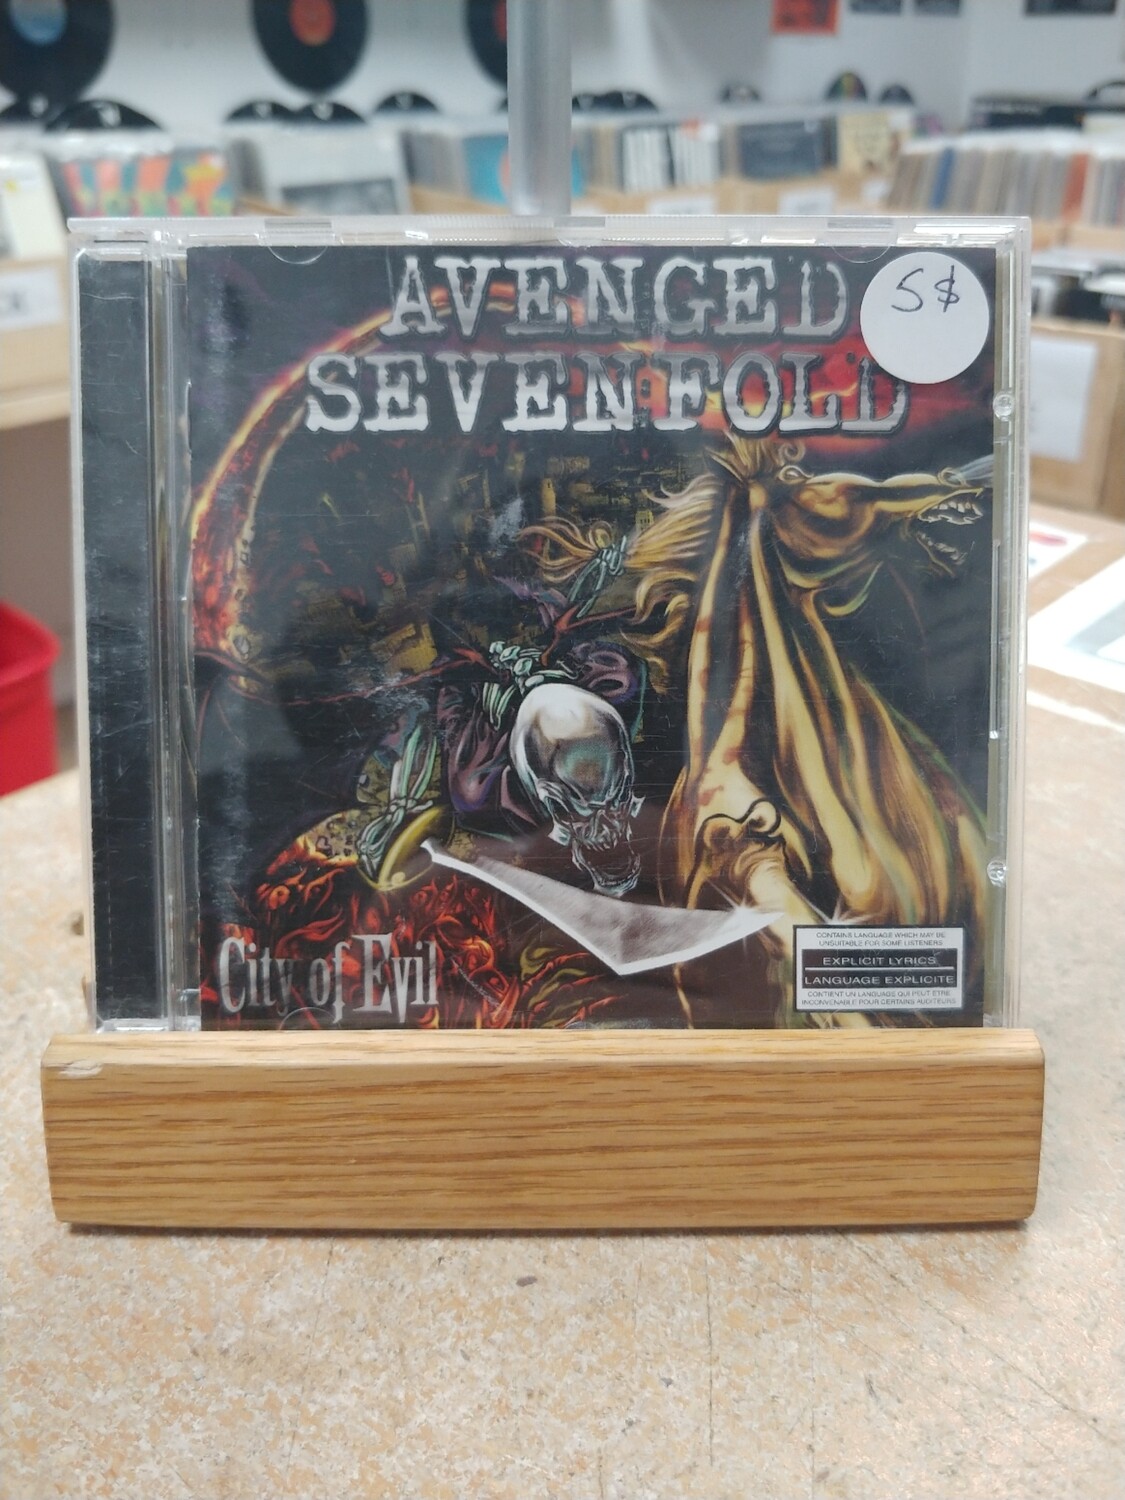 Avenged Sevenfold - City of evil (CD)